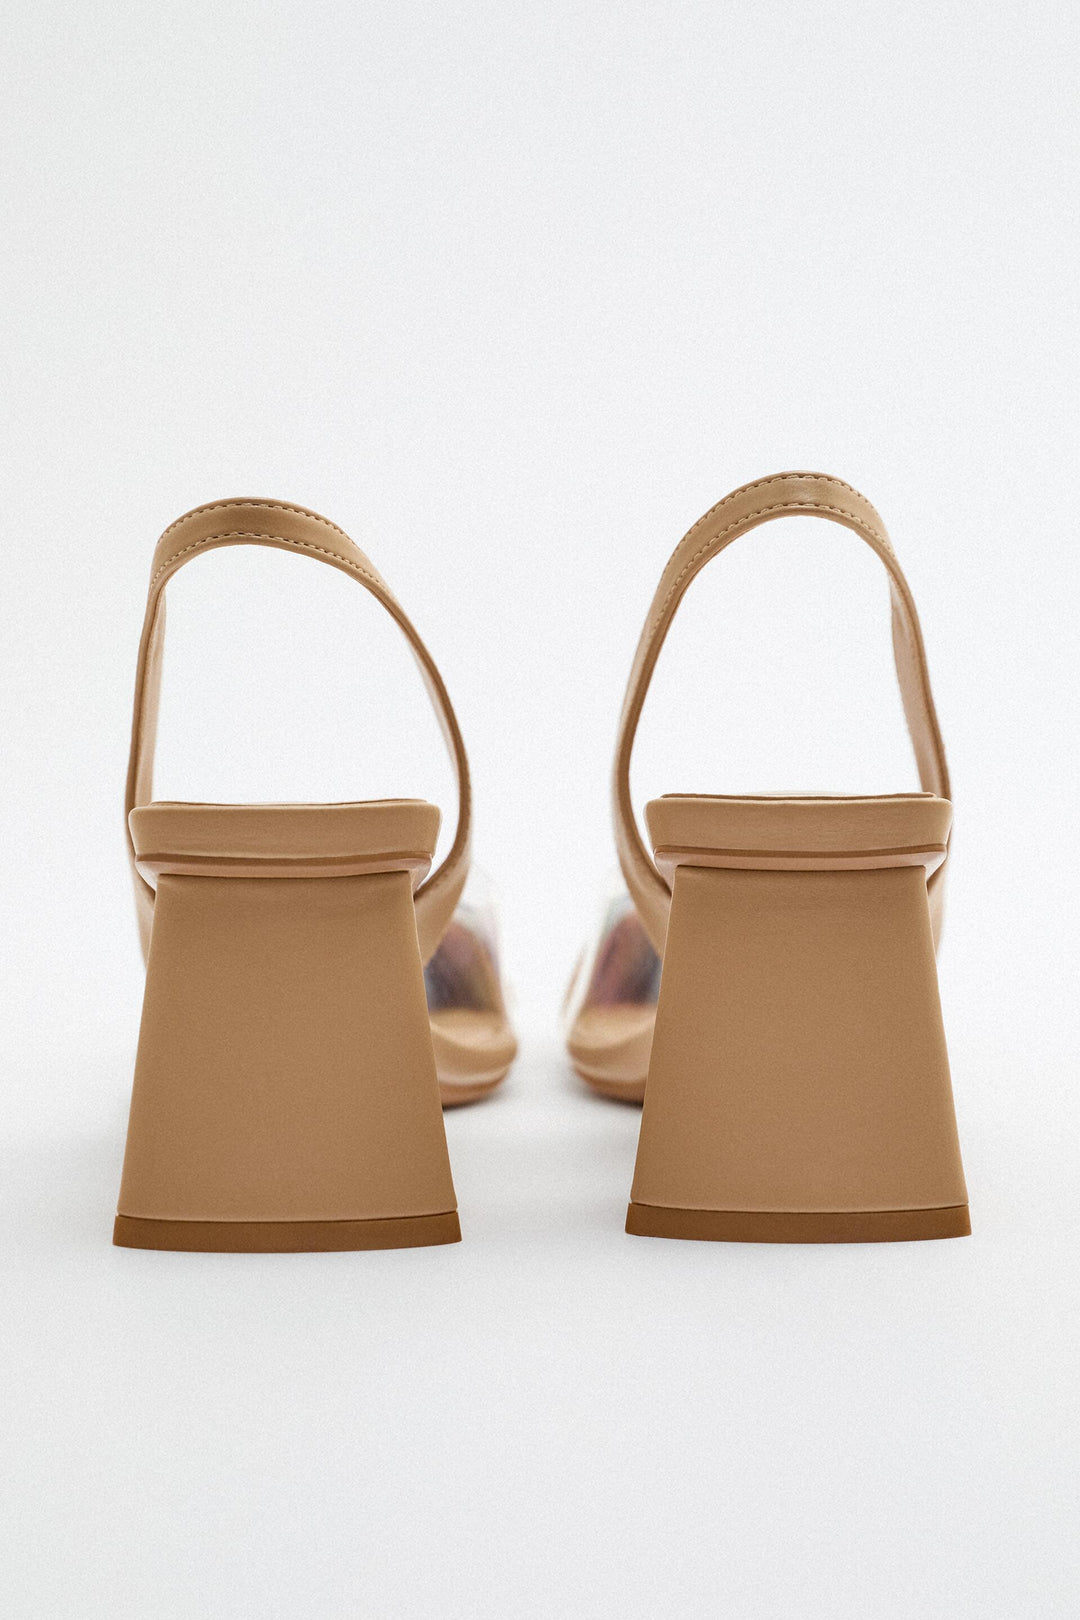 Chaussures marque_Zara, genre_Femme Moudda Tunisie1